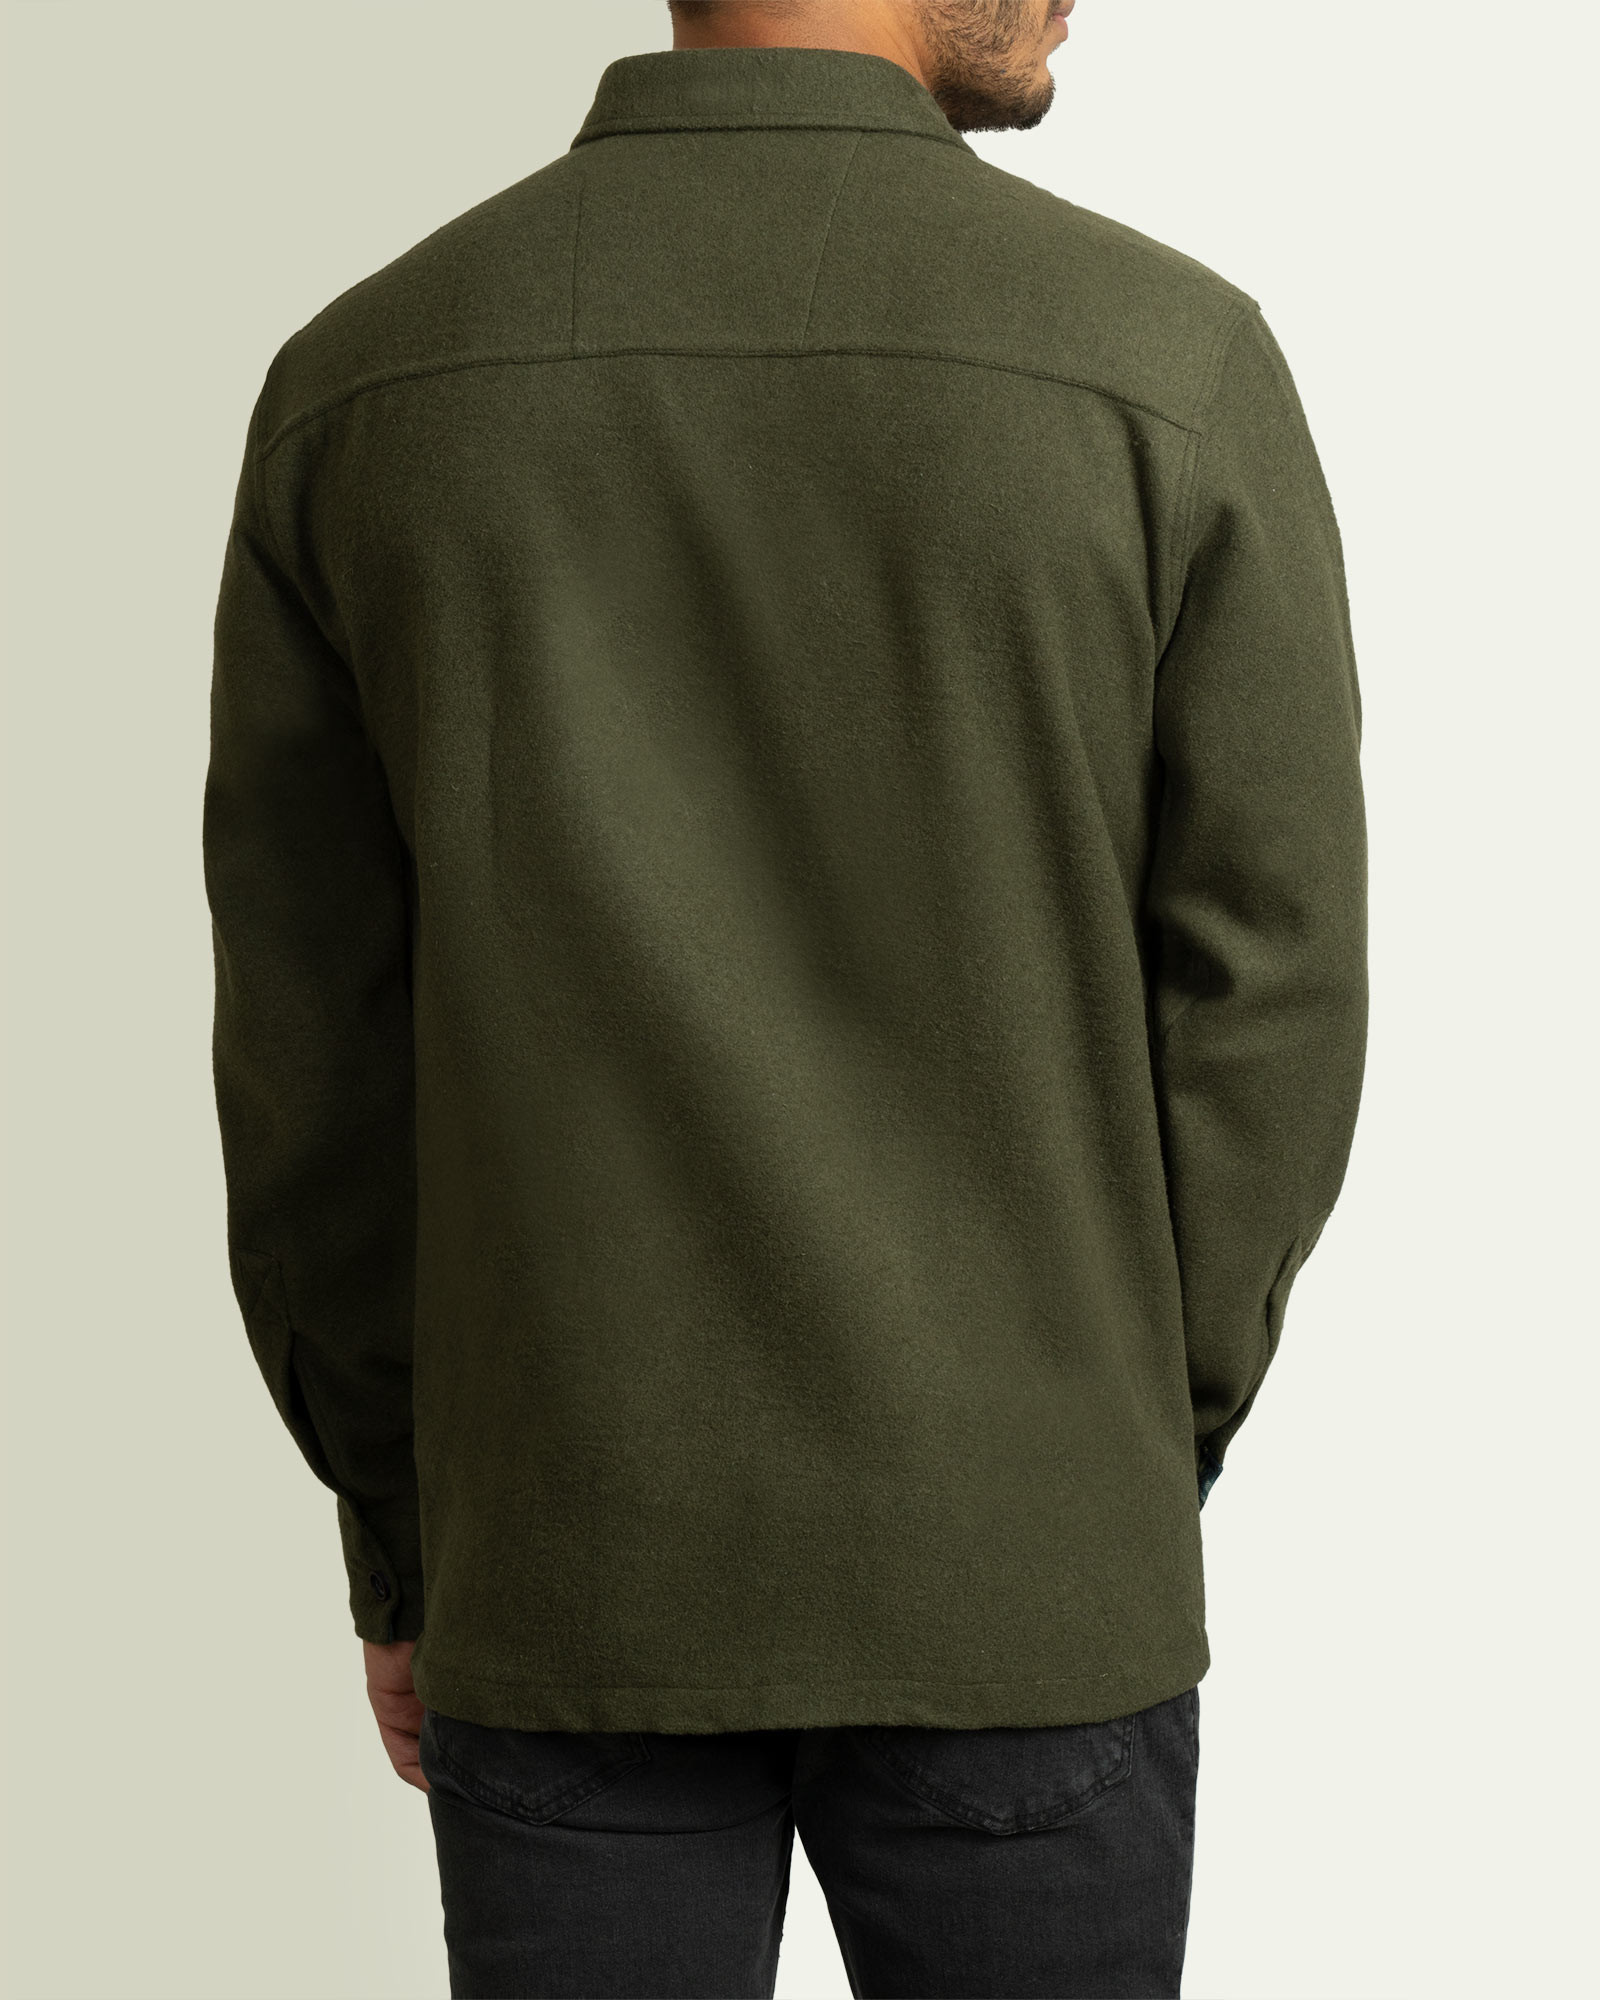 پیراهن کتی مردانه آستین بلند سبز 21252207